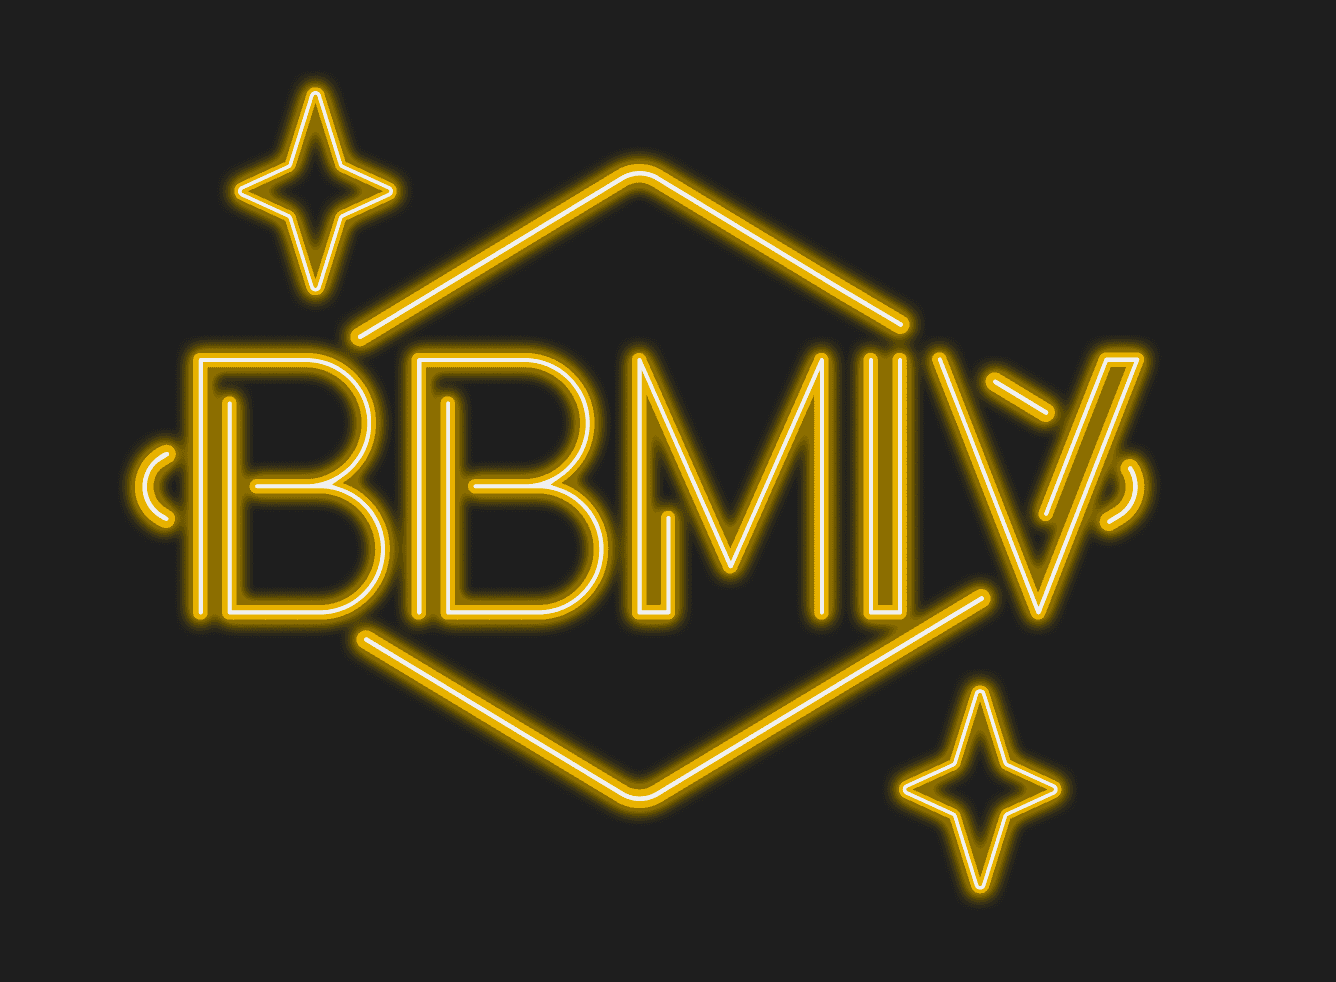 BBMIV Logo